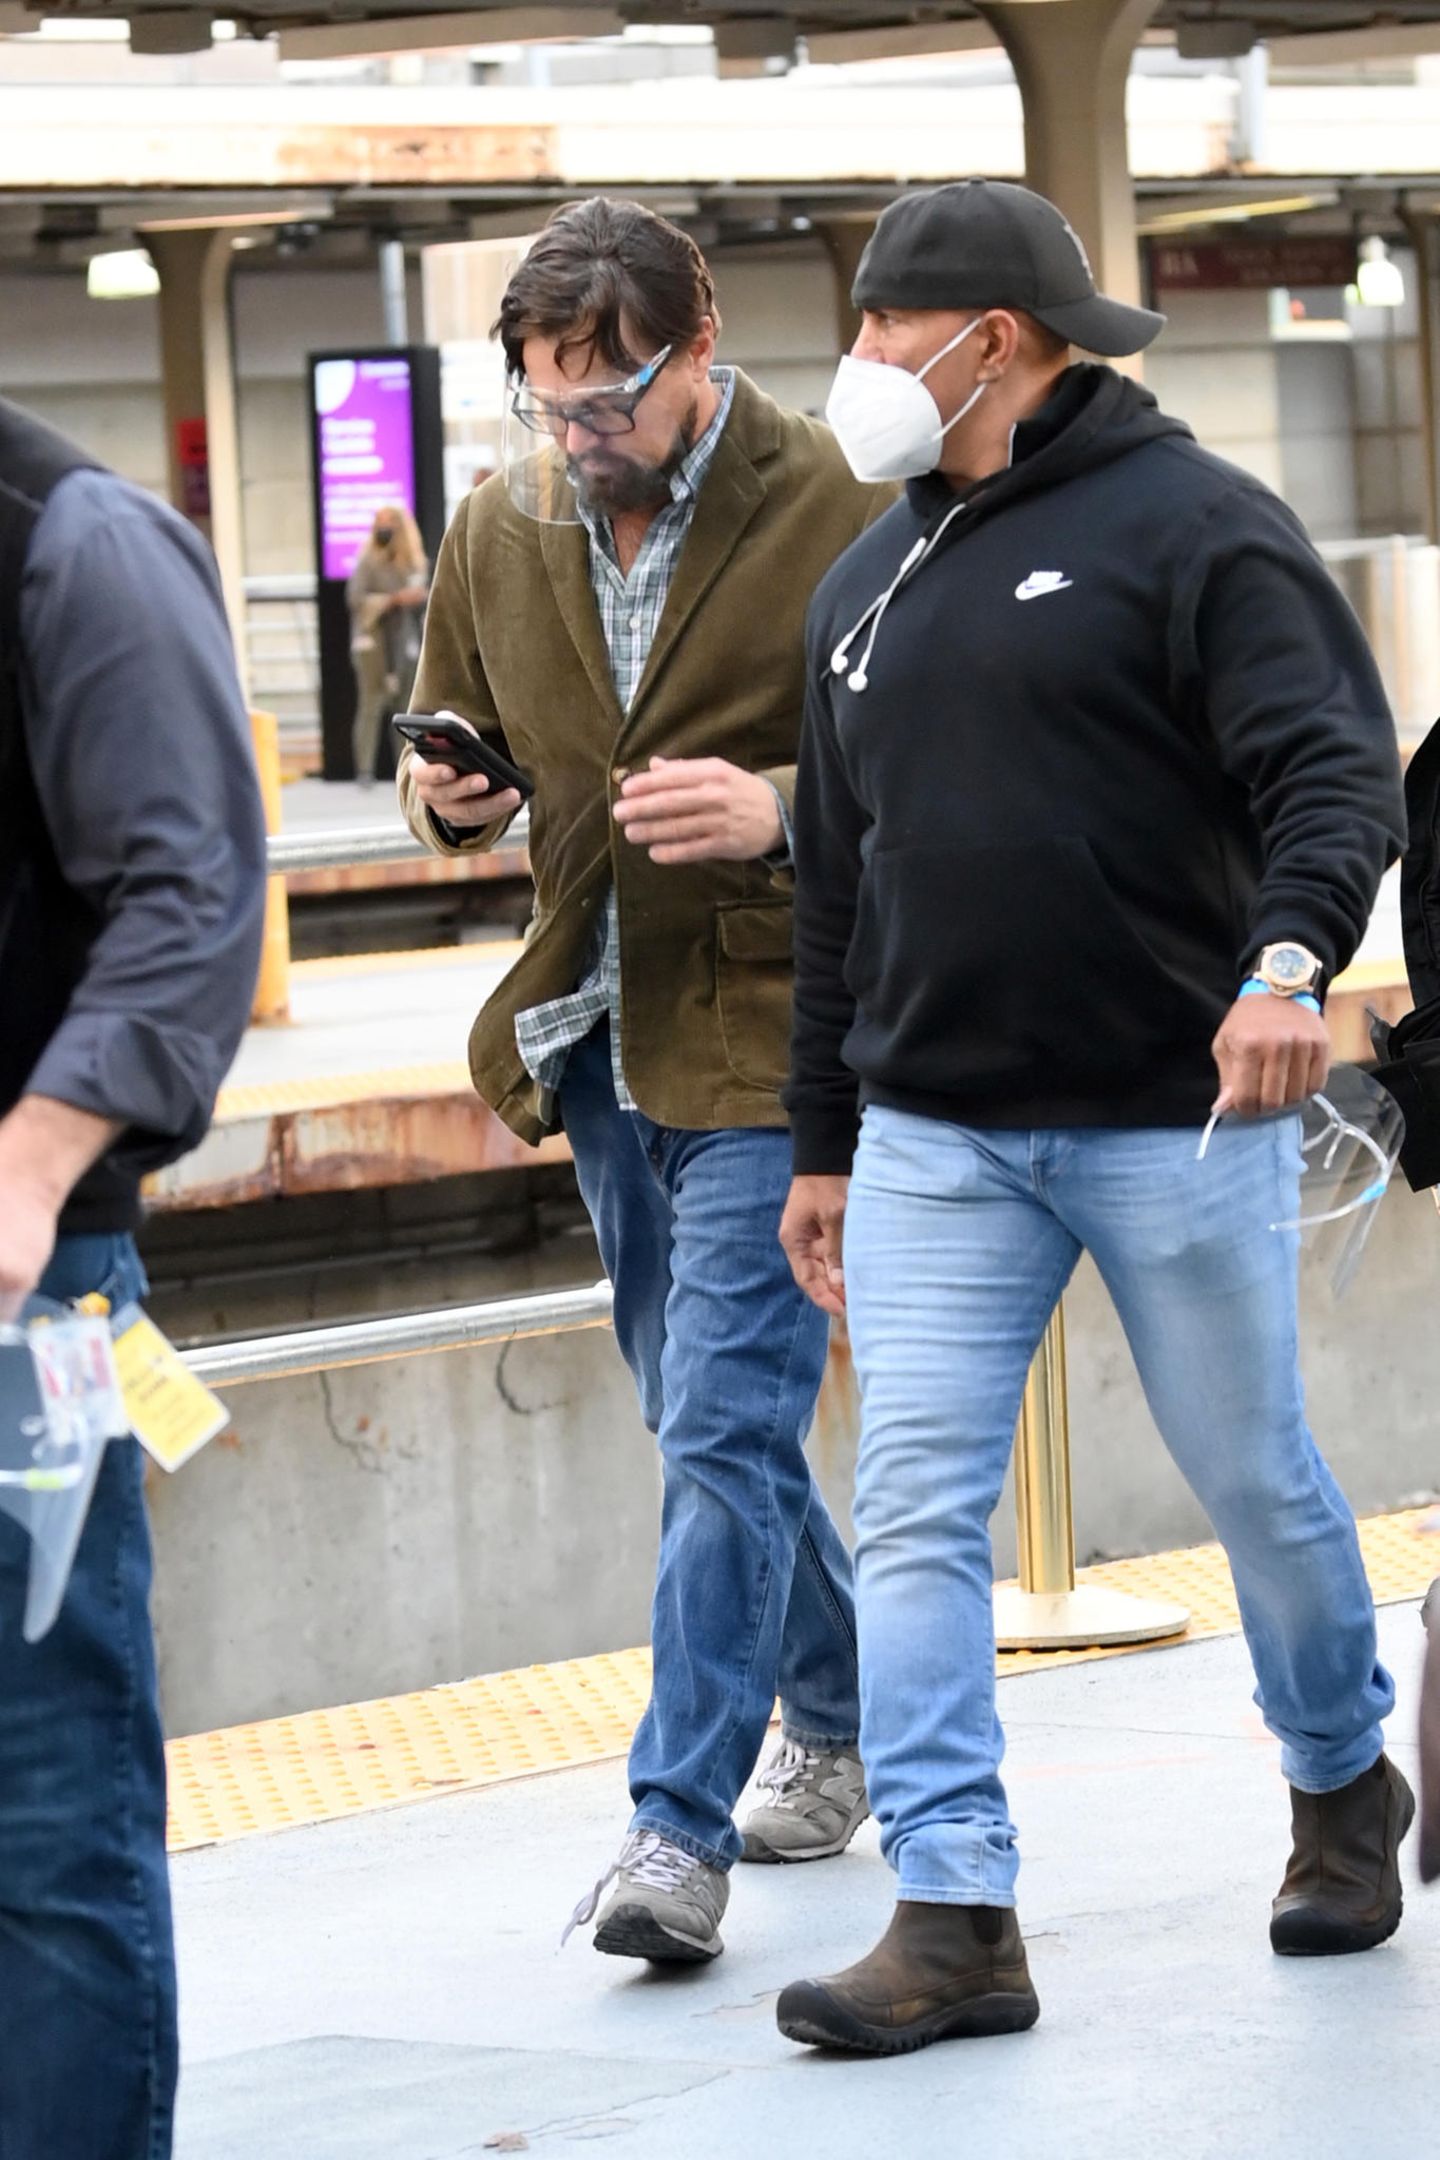 Leonardo DiCaprio wird mit ihr abgelichtet - in einem ähnlich ungewöhnlichen Look, mit Brille, etwas längeren Haaren und Kordsakko. Zur Aufklärung: Die beiden stehen in Boston, Massachusetts, für ihren neuen Film "Don't Look Up" vor der Kamera und tragen Kostüme. 